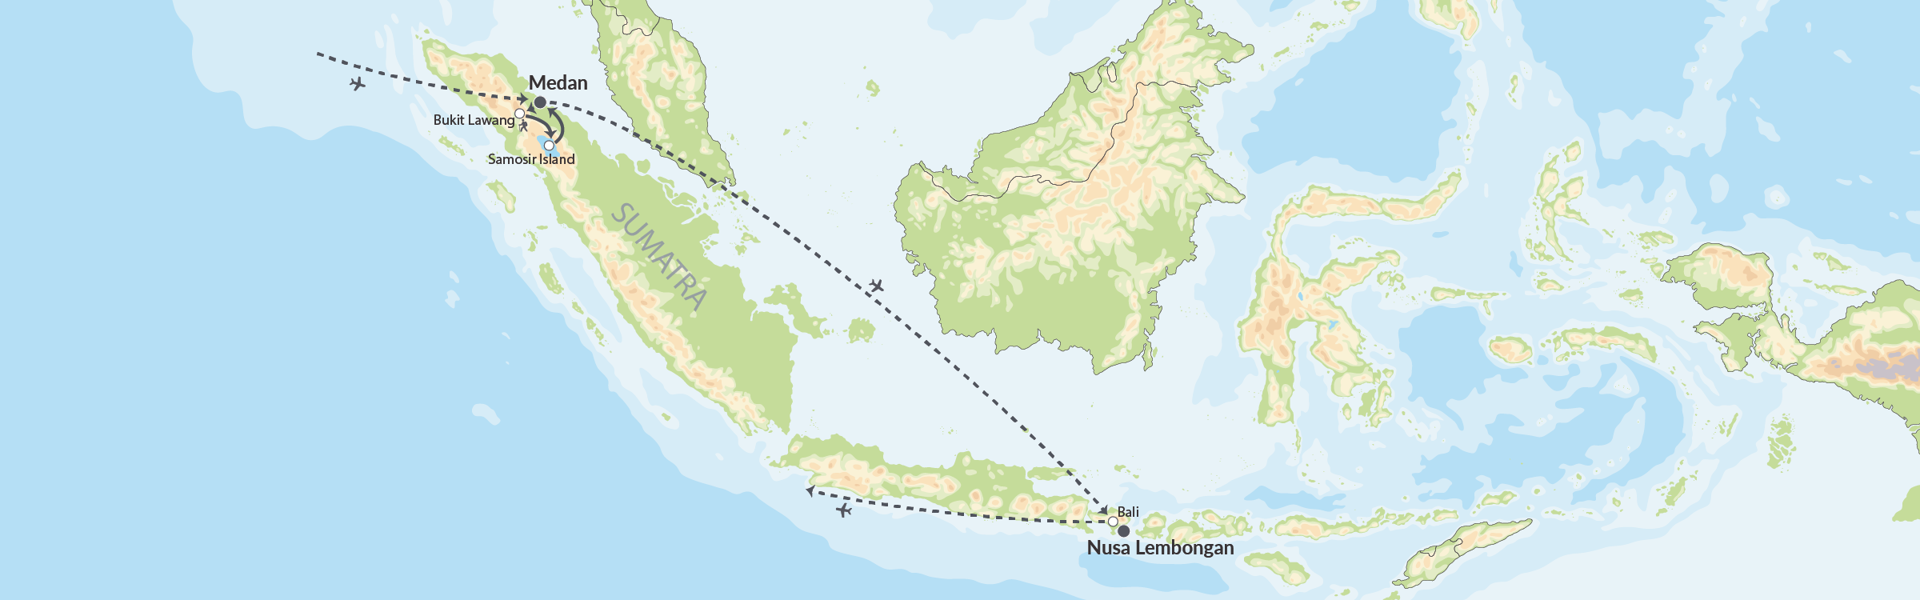 108007 Sumatra Og Bali